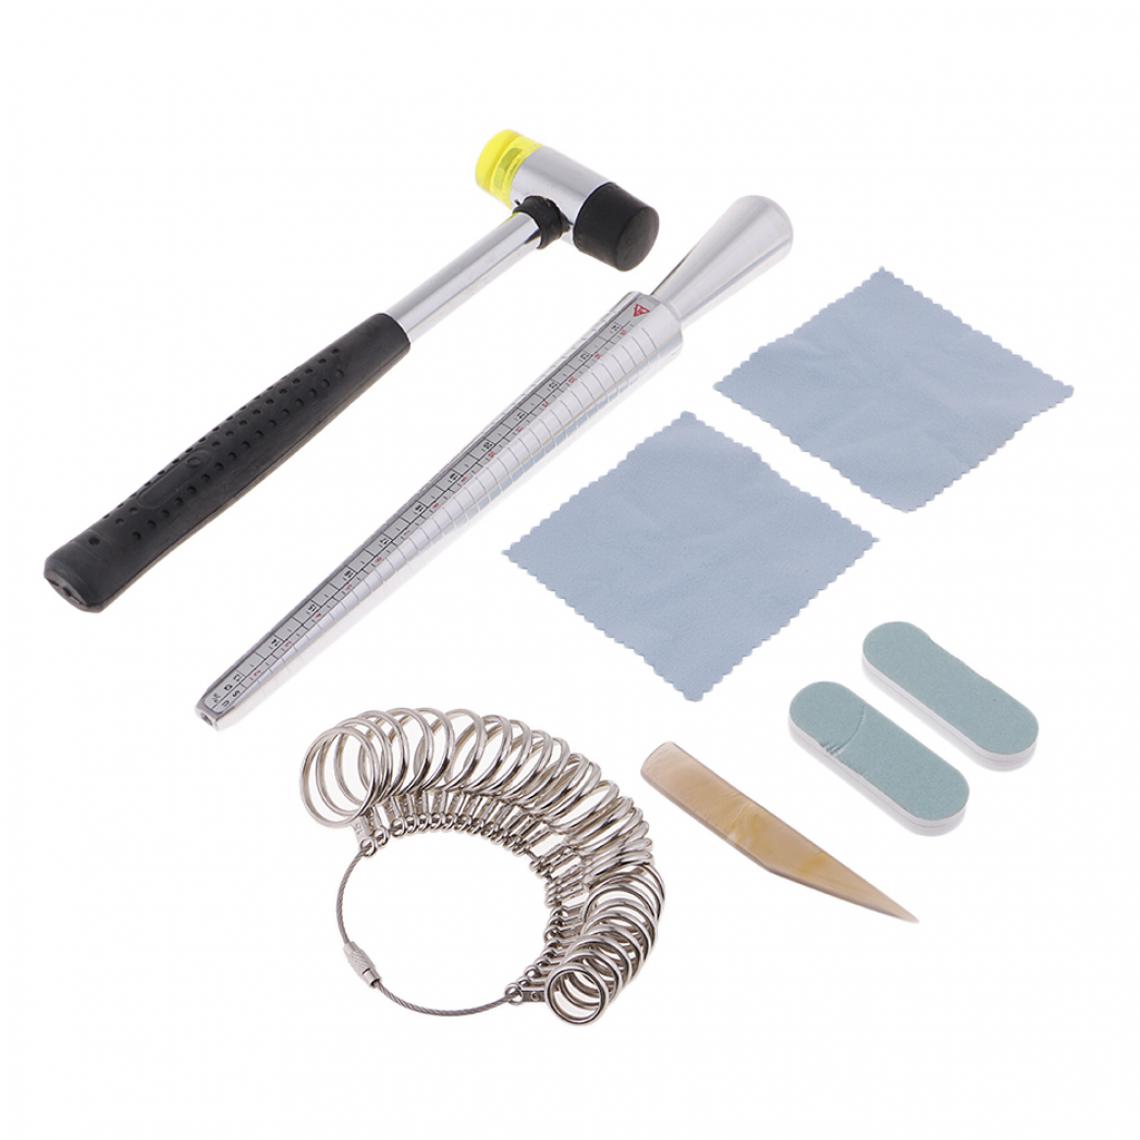 marque generique - 8pcs Kit de Baguier/Outil Calibreur/Sizer en Métal pour Mesurer la Taille des Anneaux - Perles